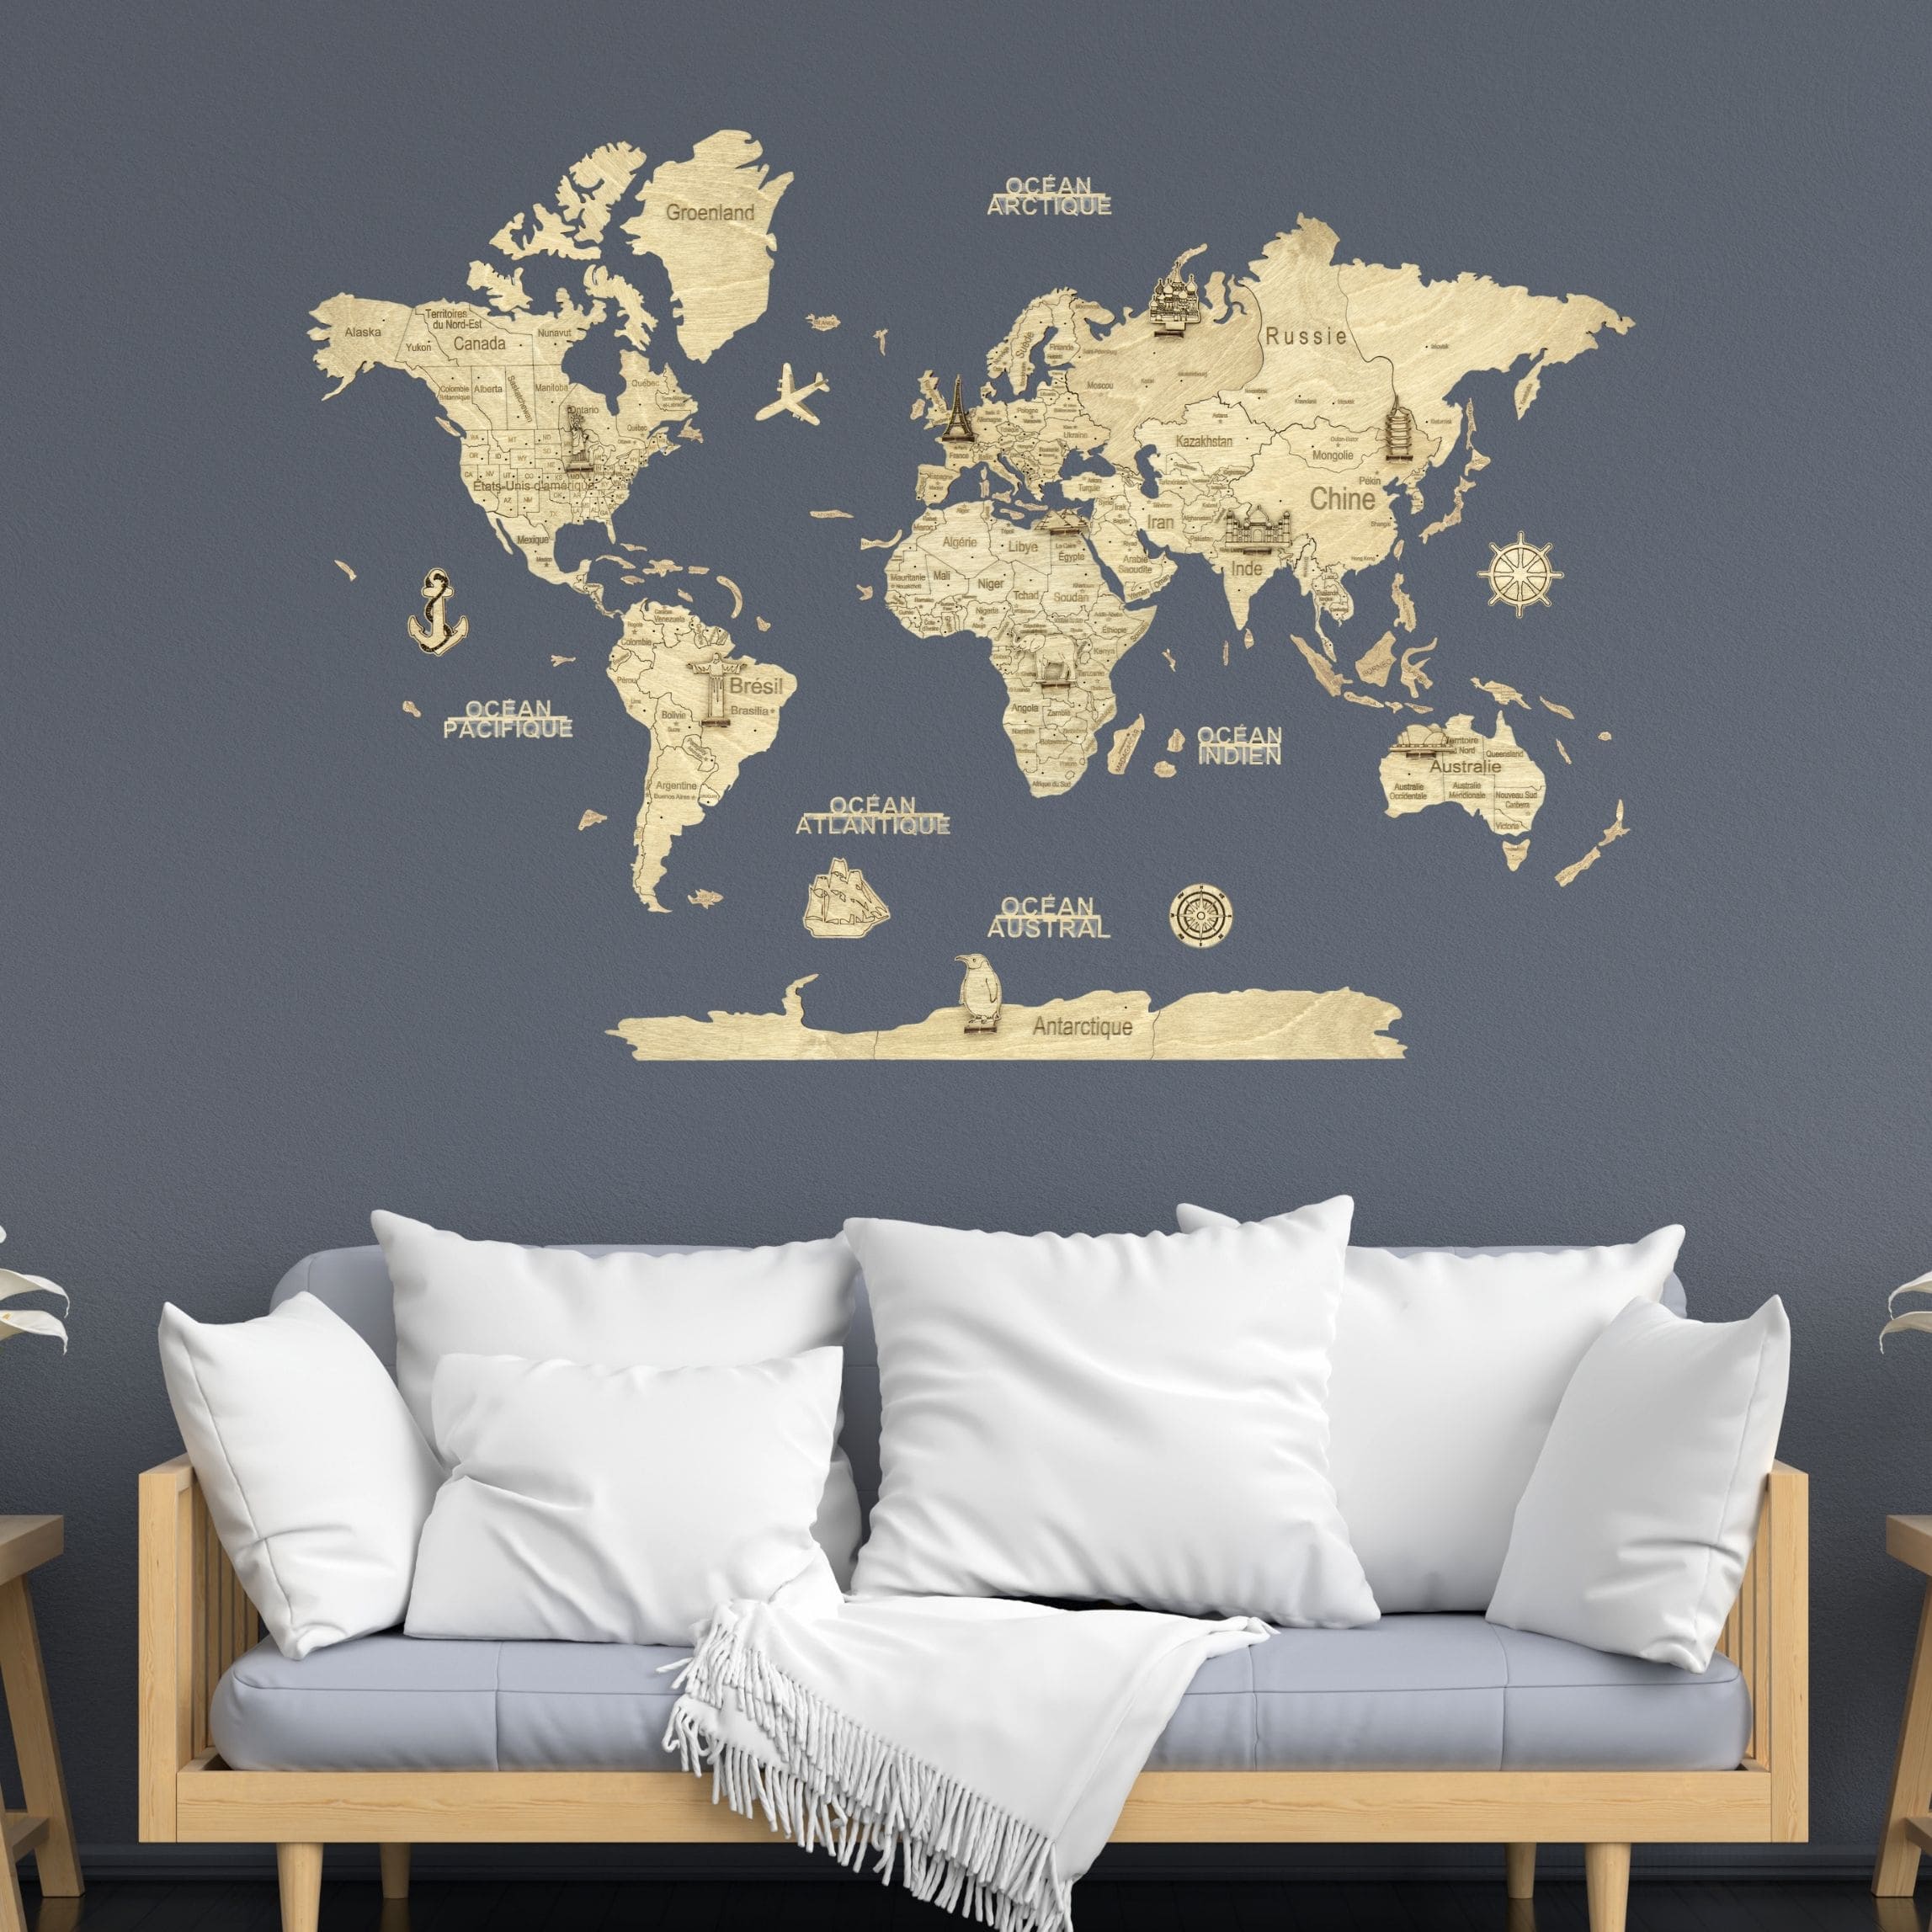 La carte du monde déco en Français, une Création originale